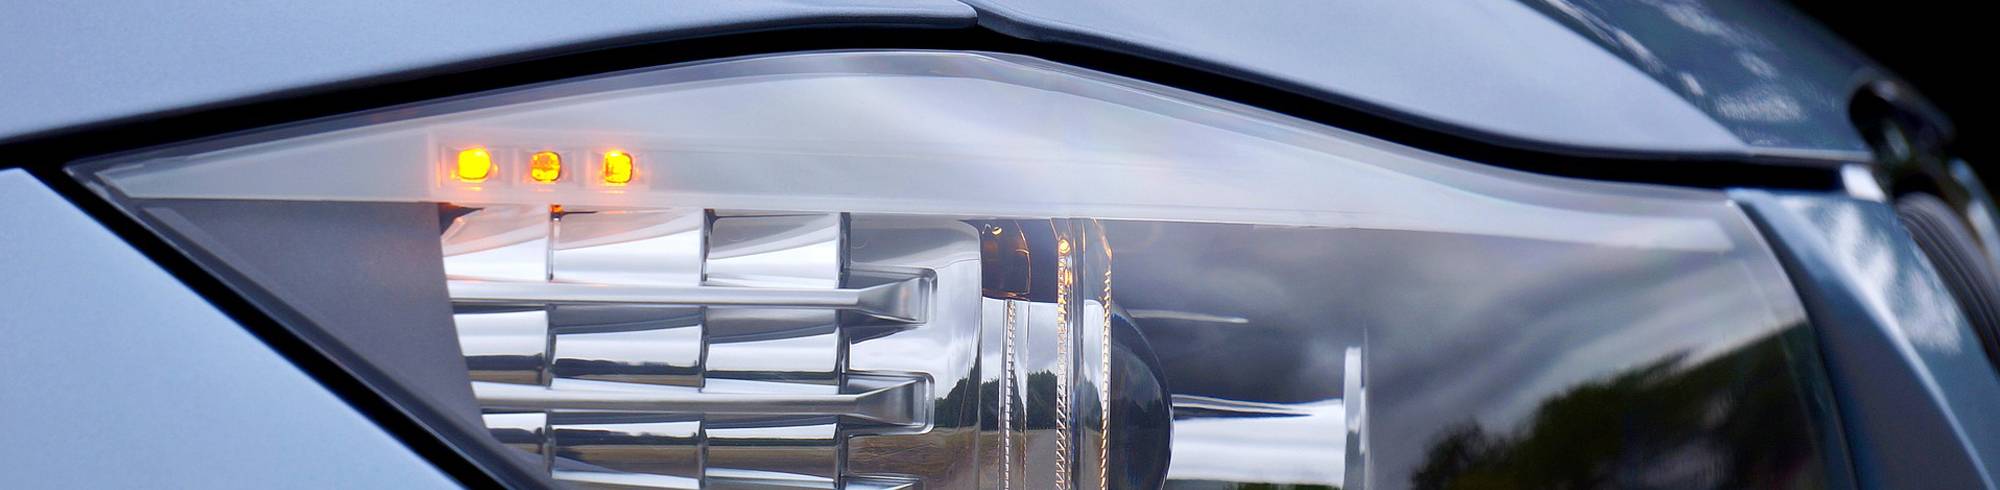 LED-härtende Klebstoffe und Beschichtungen für die Montage von Automobilbauteilen